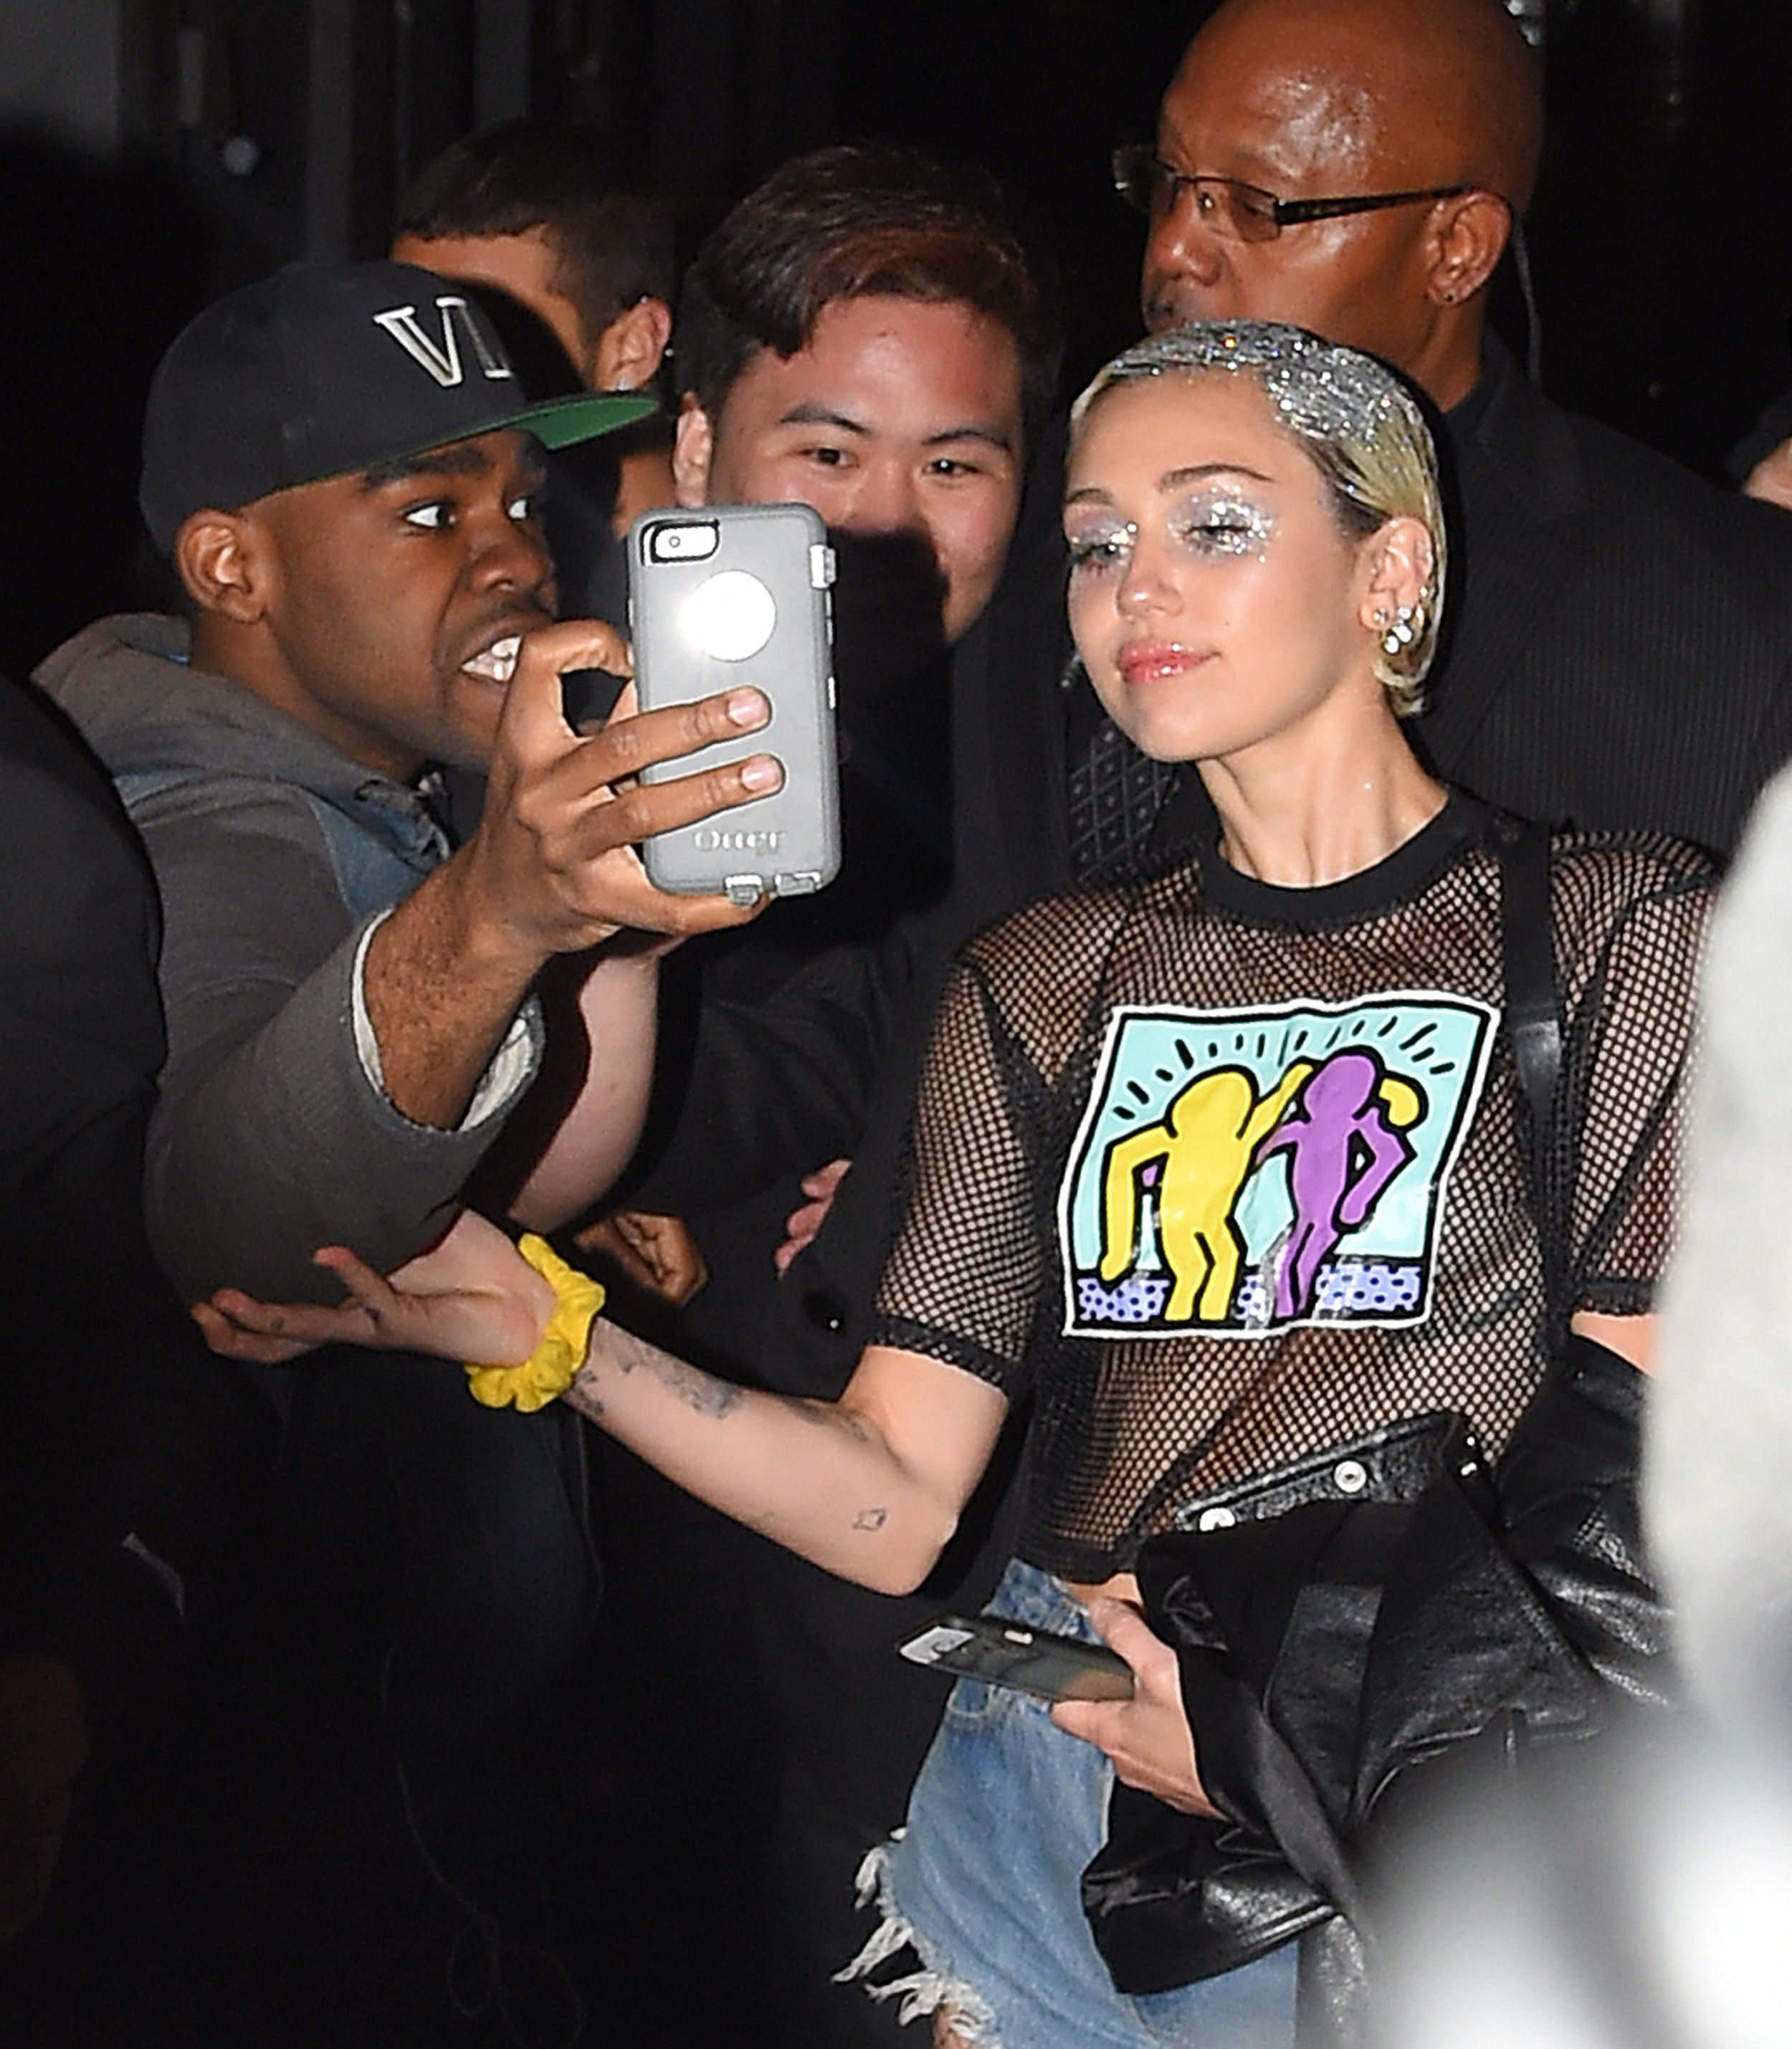 Miley Cyrus See Through (64 Photos)